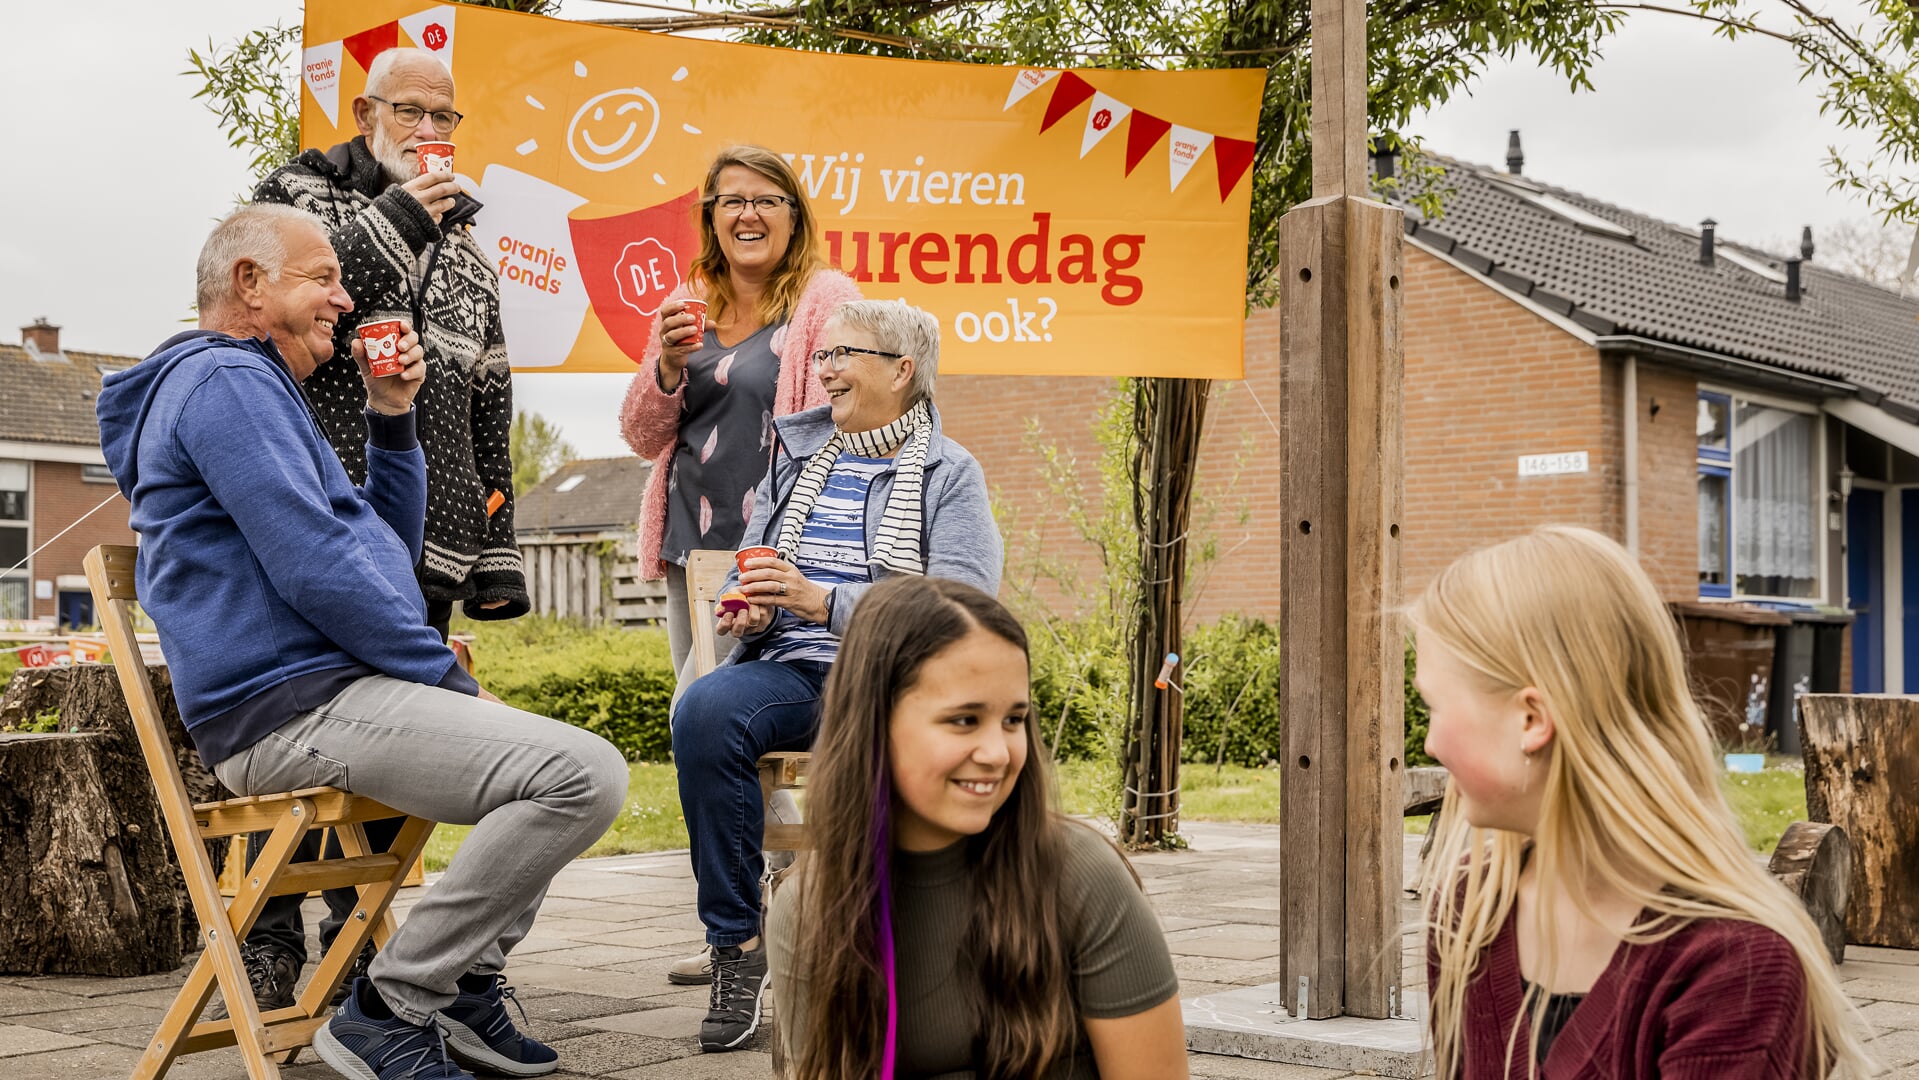 Ook in Amstelveen vinden komend weekend diverse activiteiten plaats ter gelegenheid van Burendag.